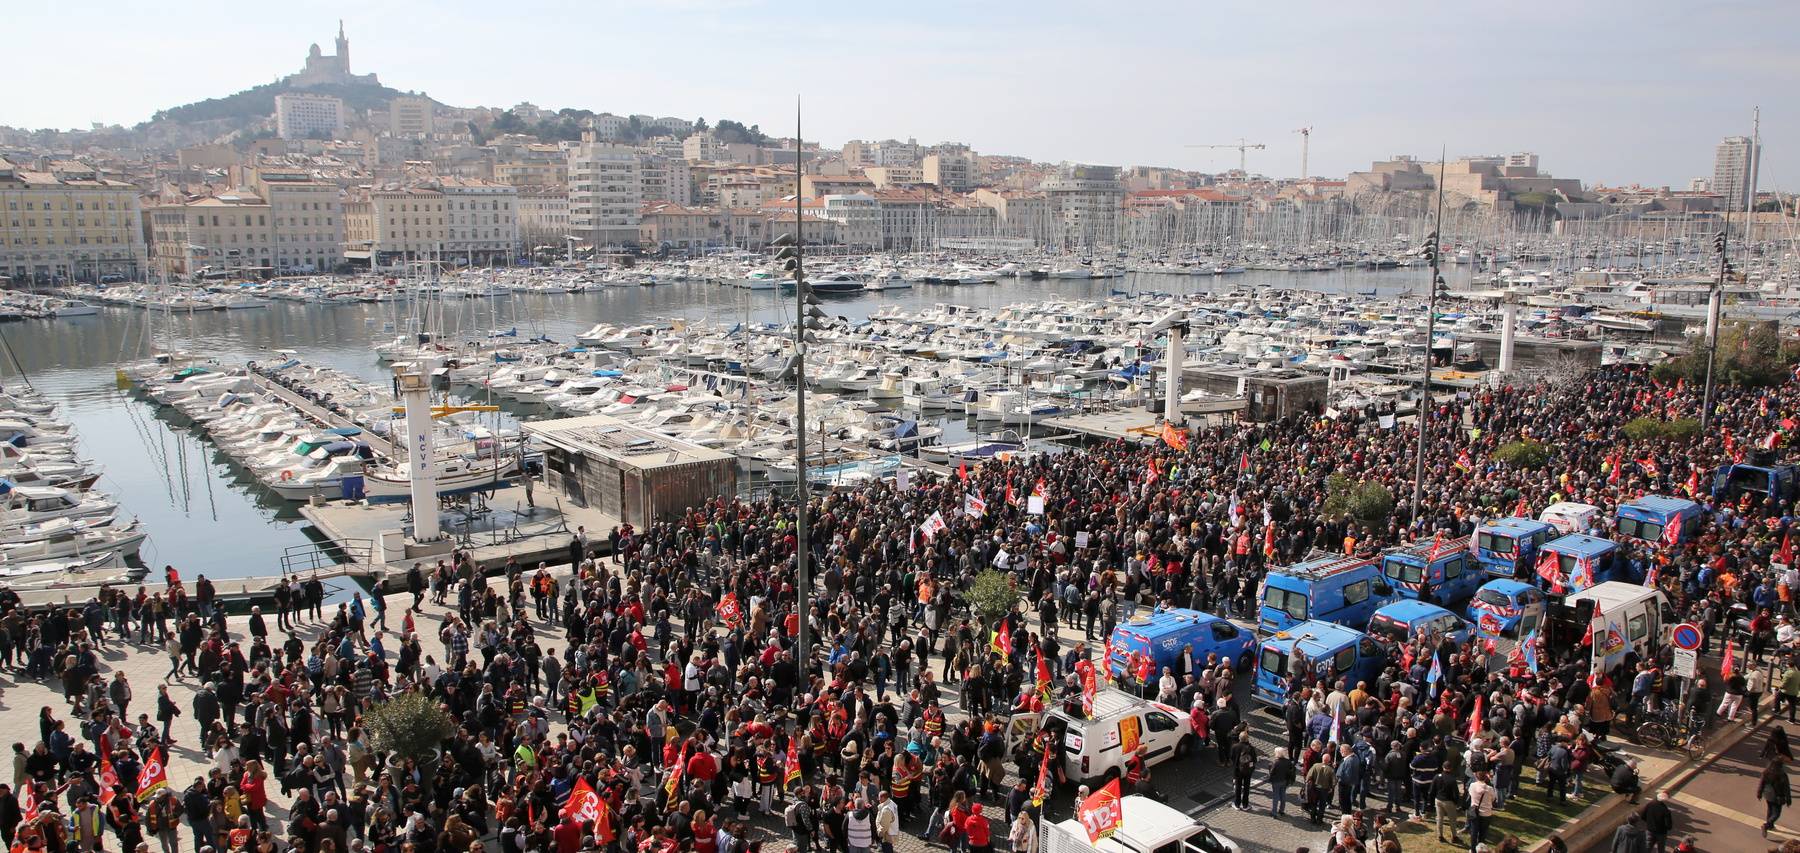 Réforme des retraites - Marseille : de nombreux jeunes ont grossi les rangs du cortège